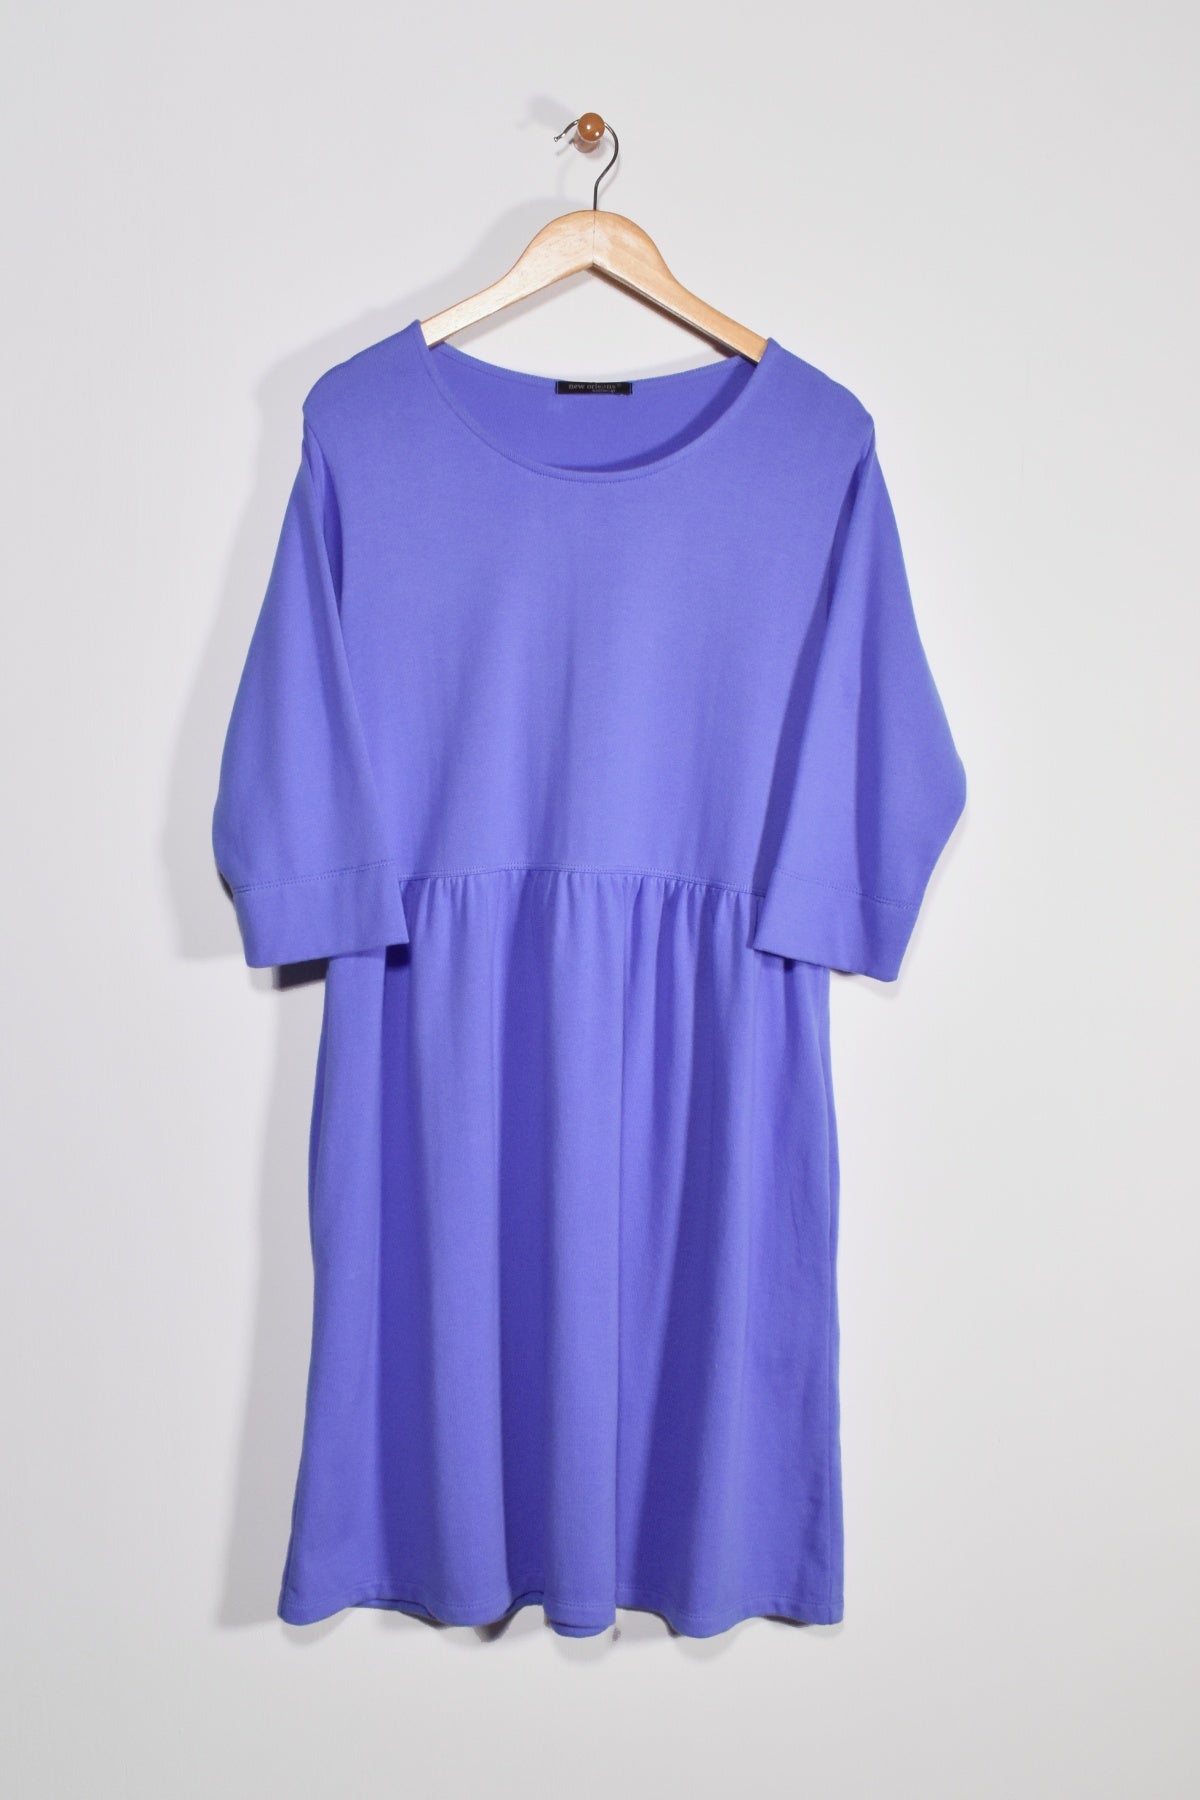 40” ¾ Sleeve Empire Waist Dress New Orleans Knitwear